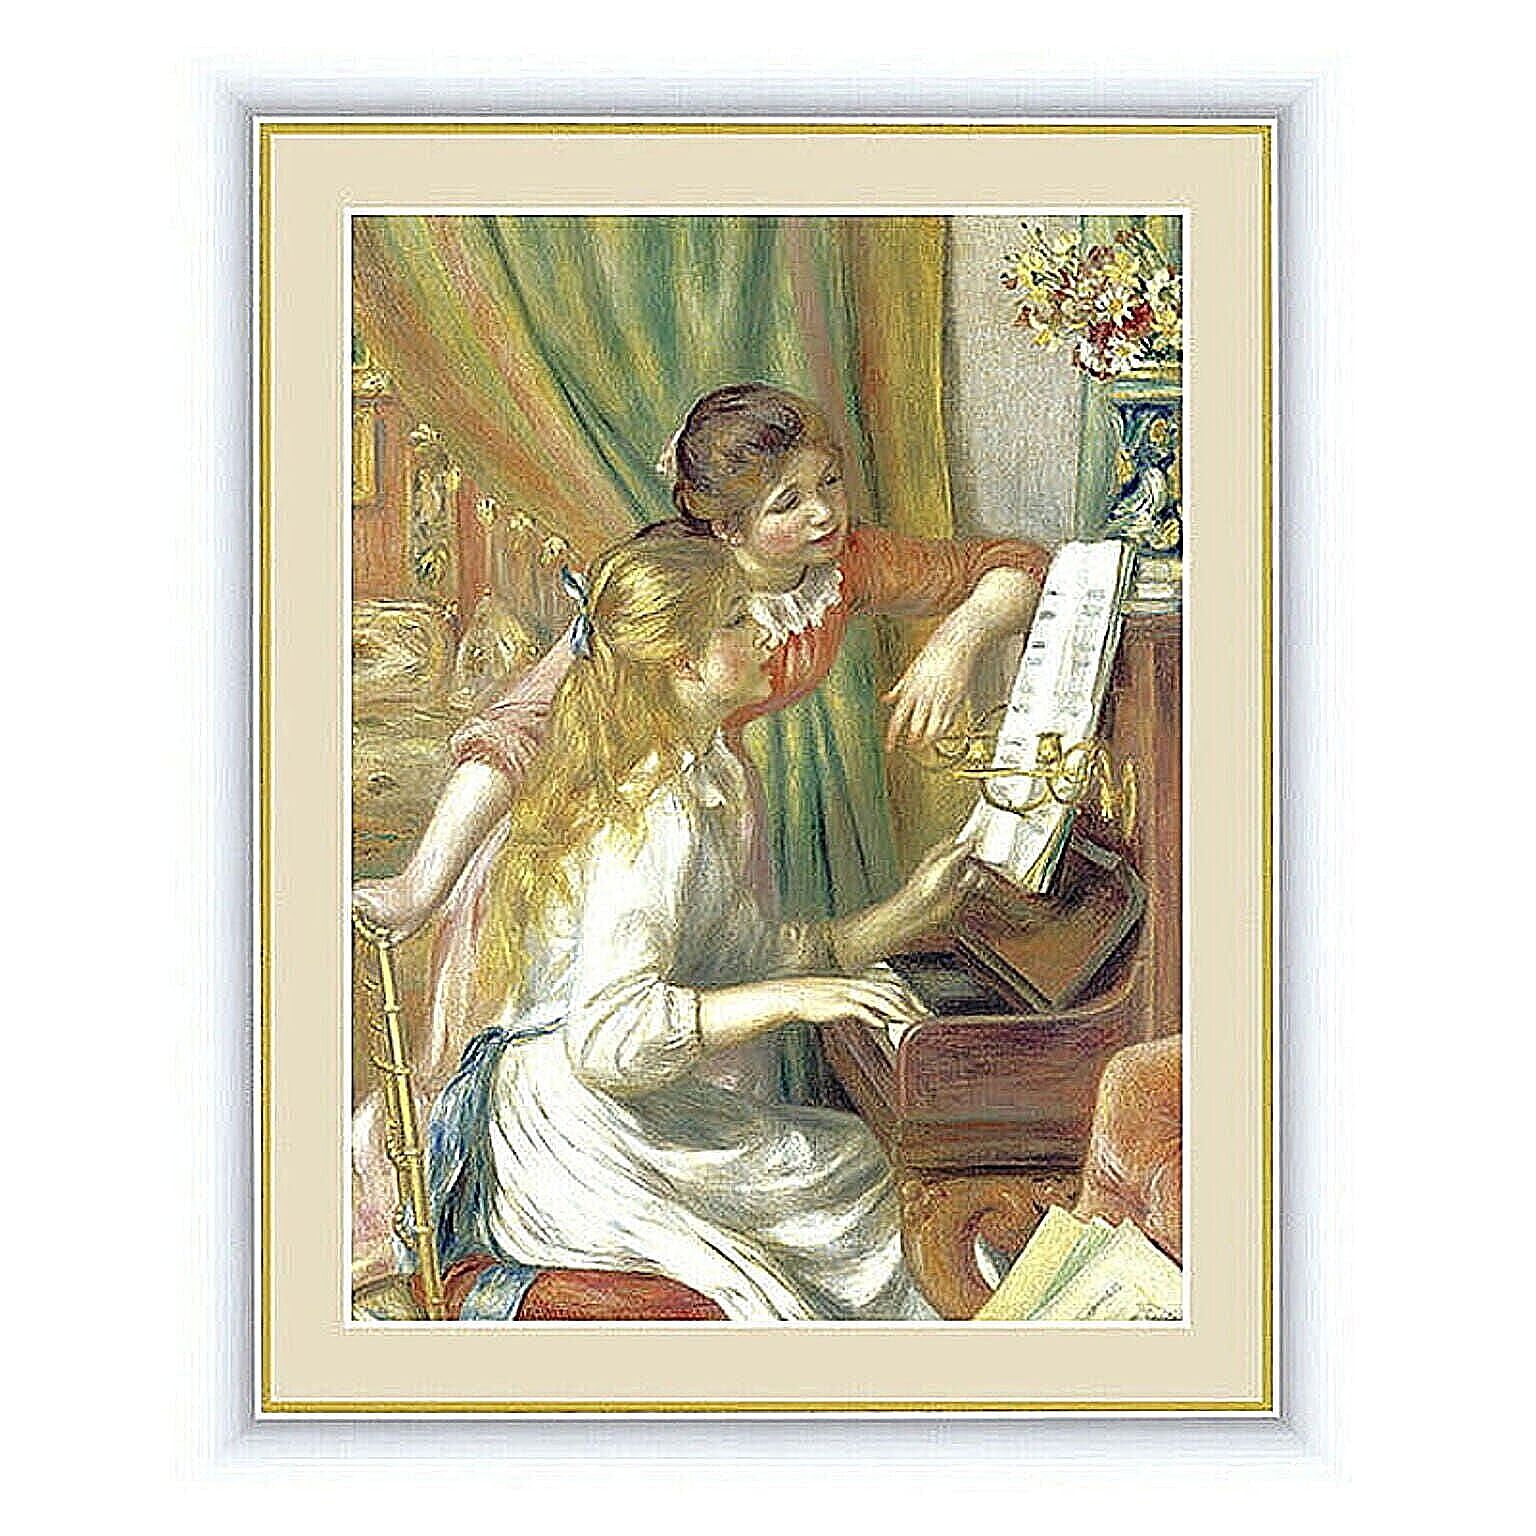 アート 額絵 ピアノに寄る少女たち ルノワール 本紙サイズ F4(約31x23cm) 額サイズ 42x34cm 三幸